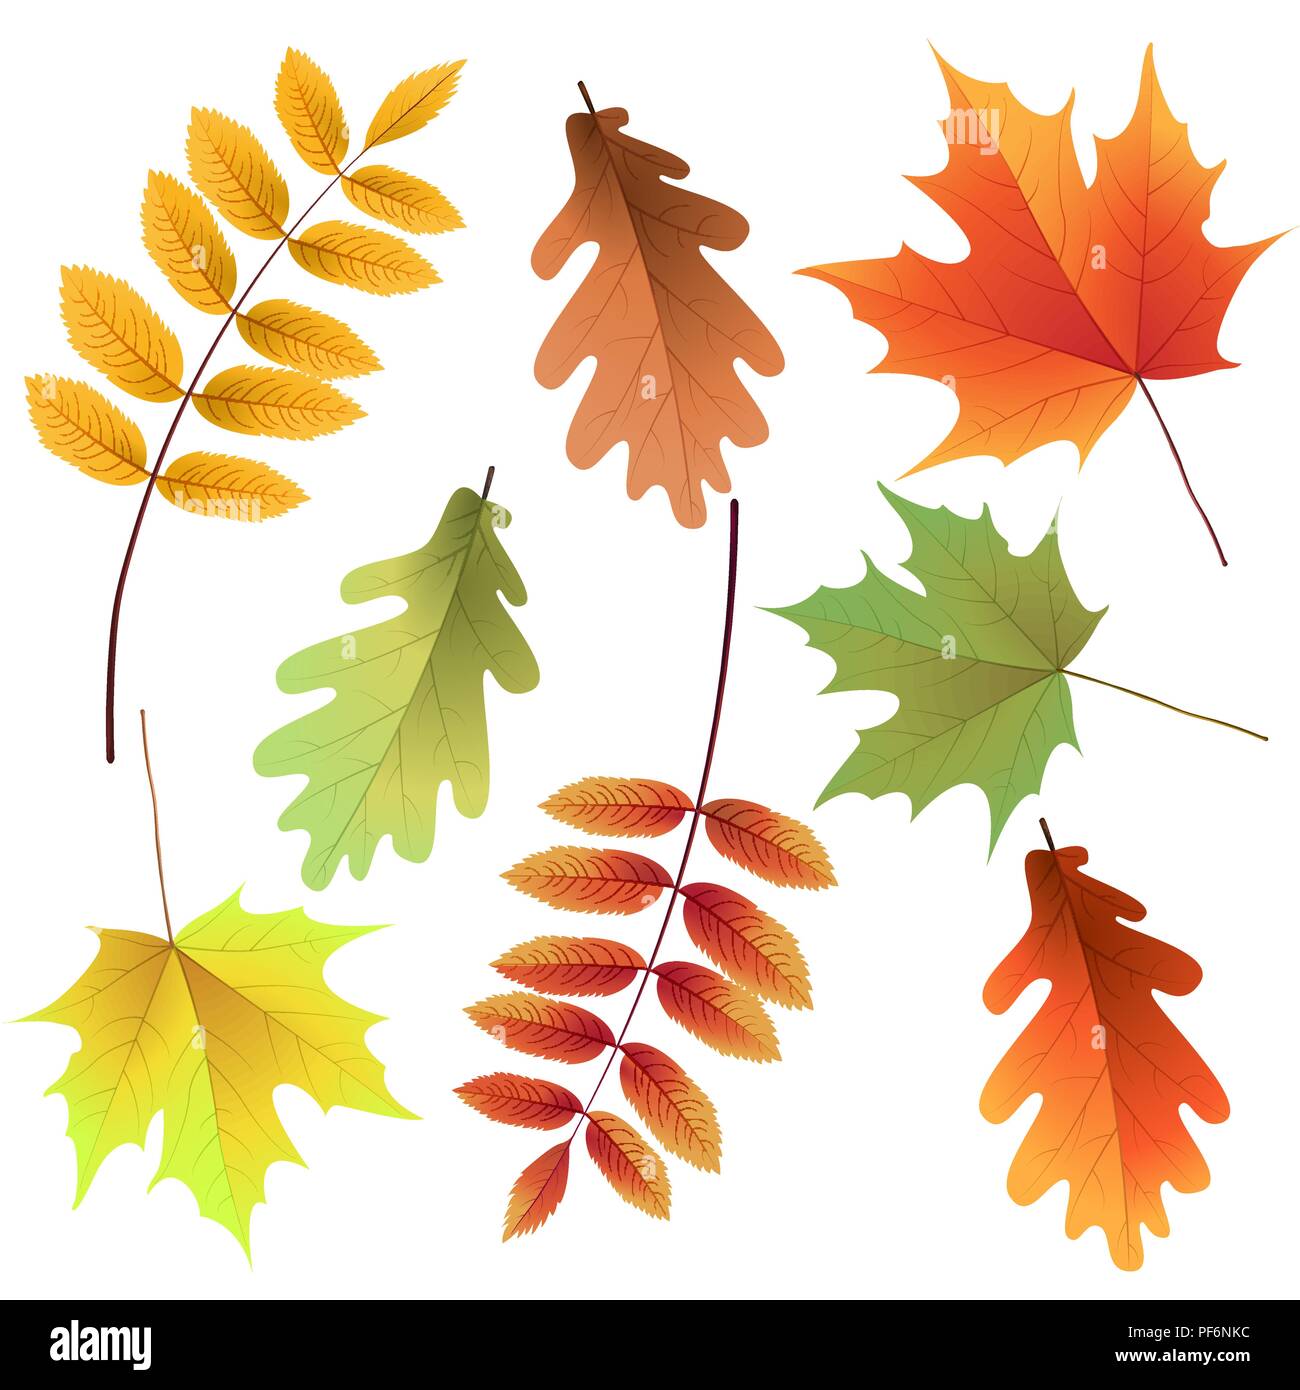 Feuilles d'automne, isolé sur fond blanc. Rowan Tree, oak, maple leaf. Bouquet de feuilles en automne. Vector illustration. Illustration de Vecteur